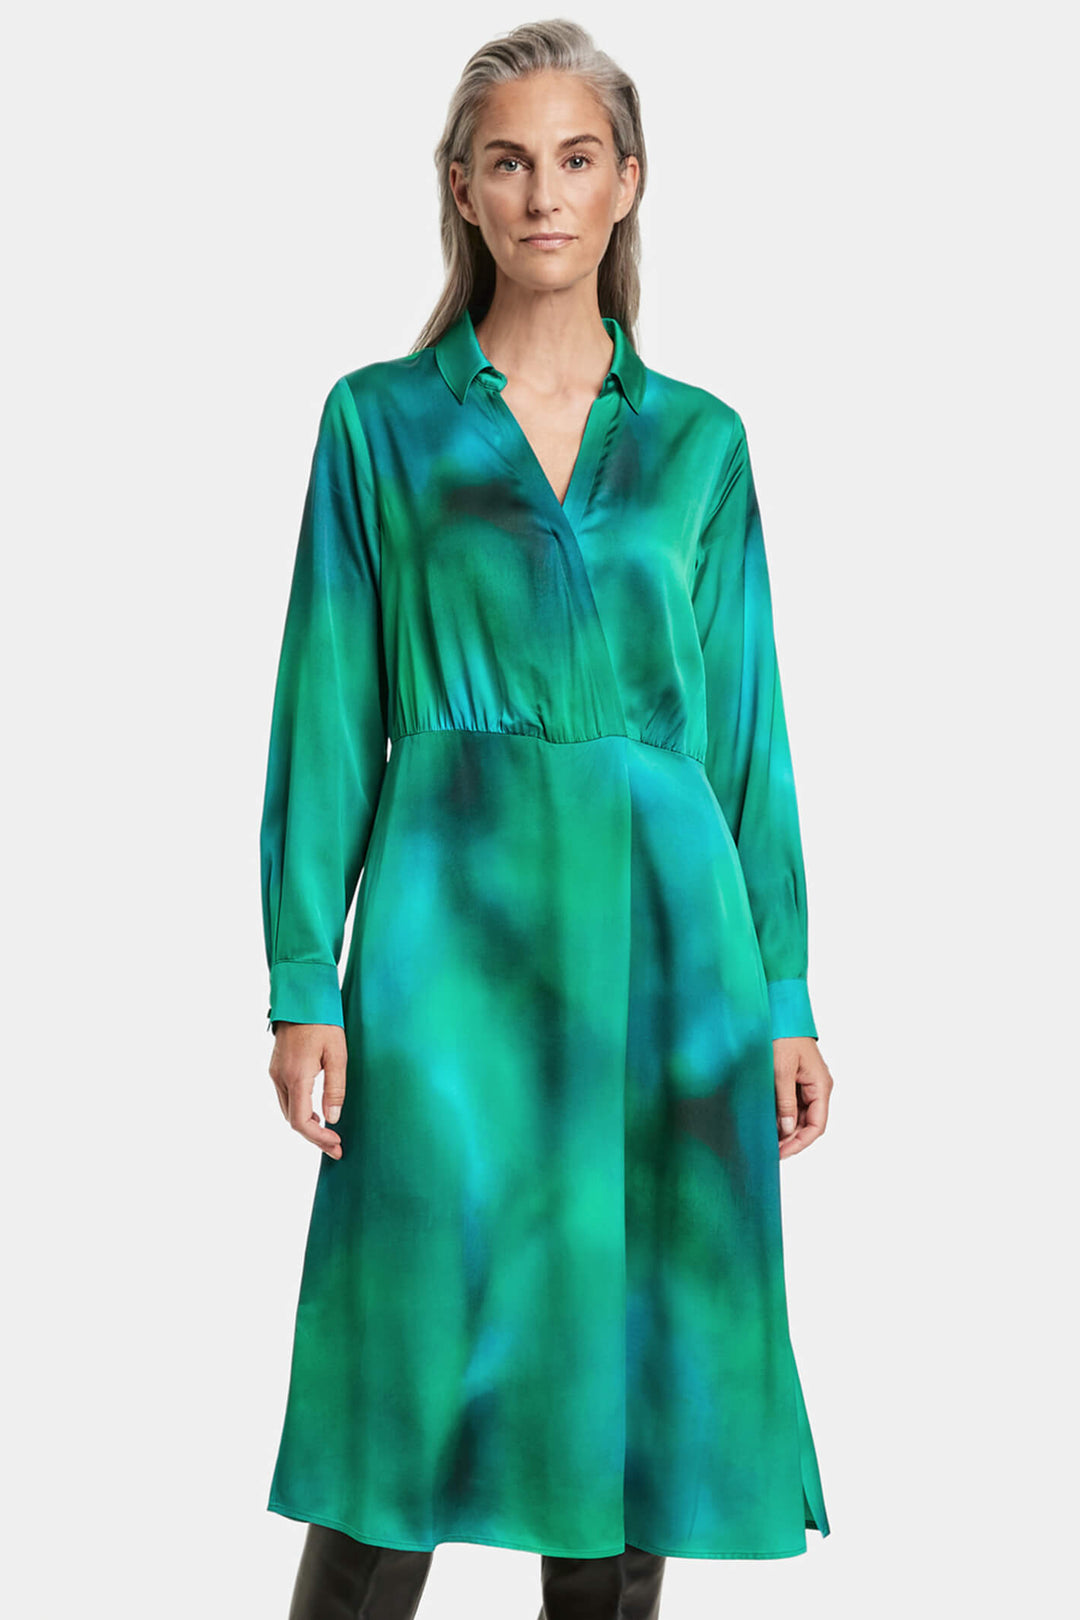 Gerry Weber 280029 Green Print Shirt Dress - Experience Boutique